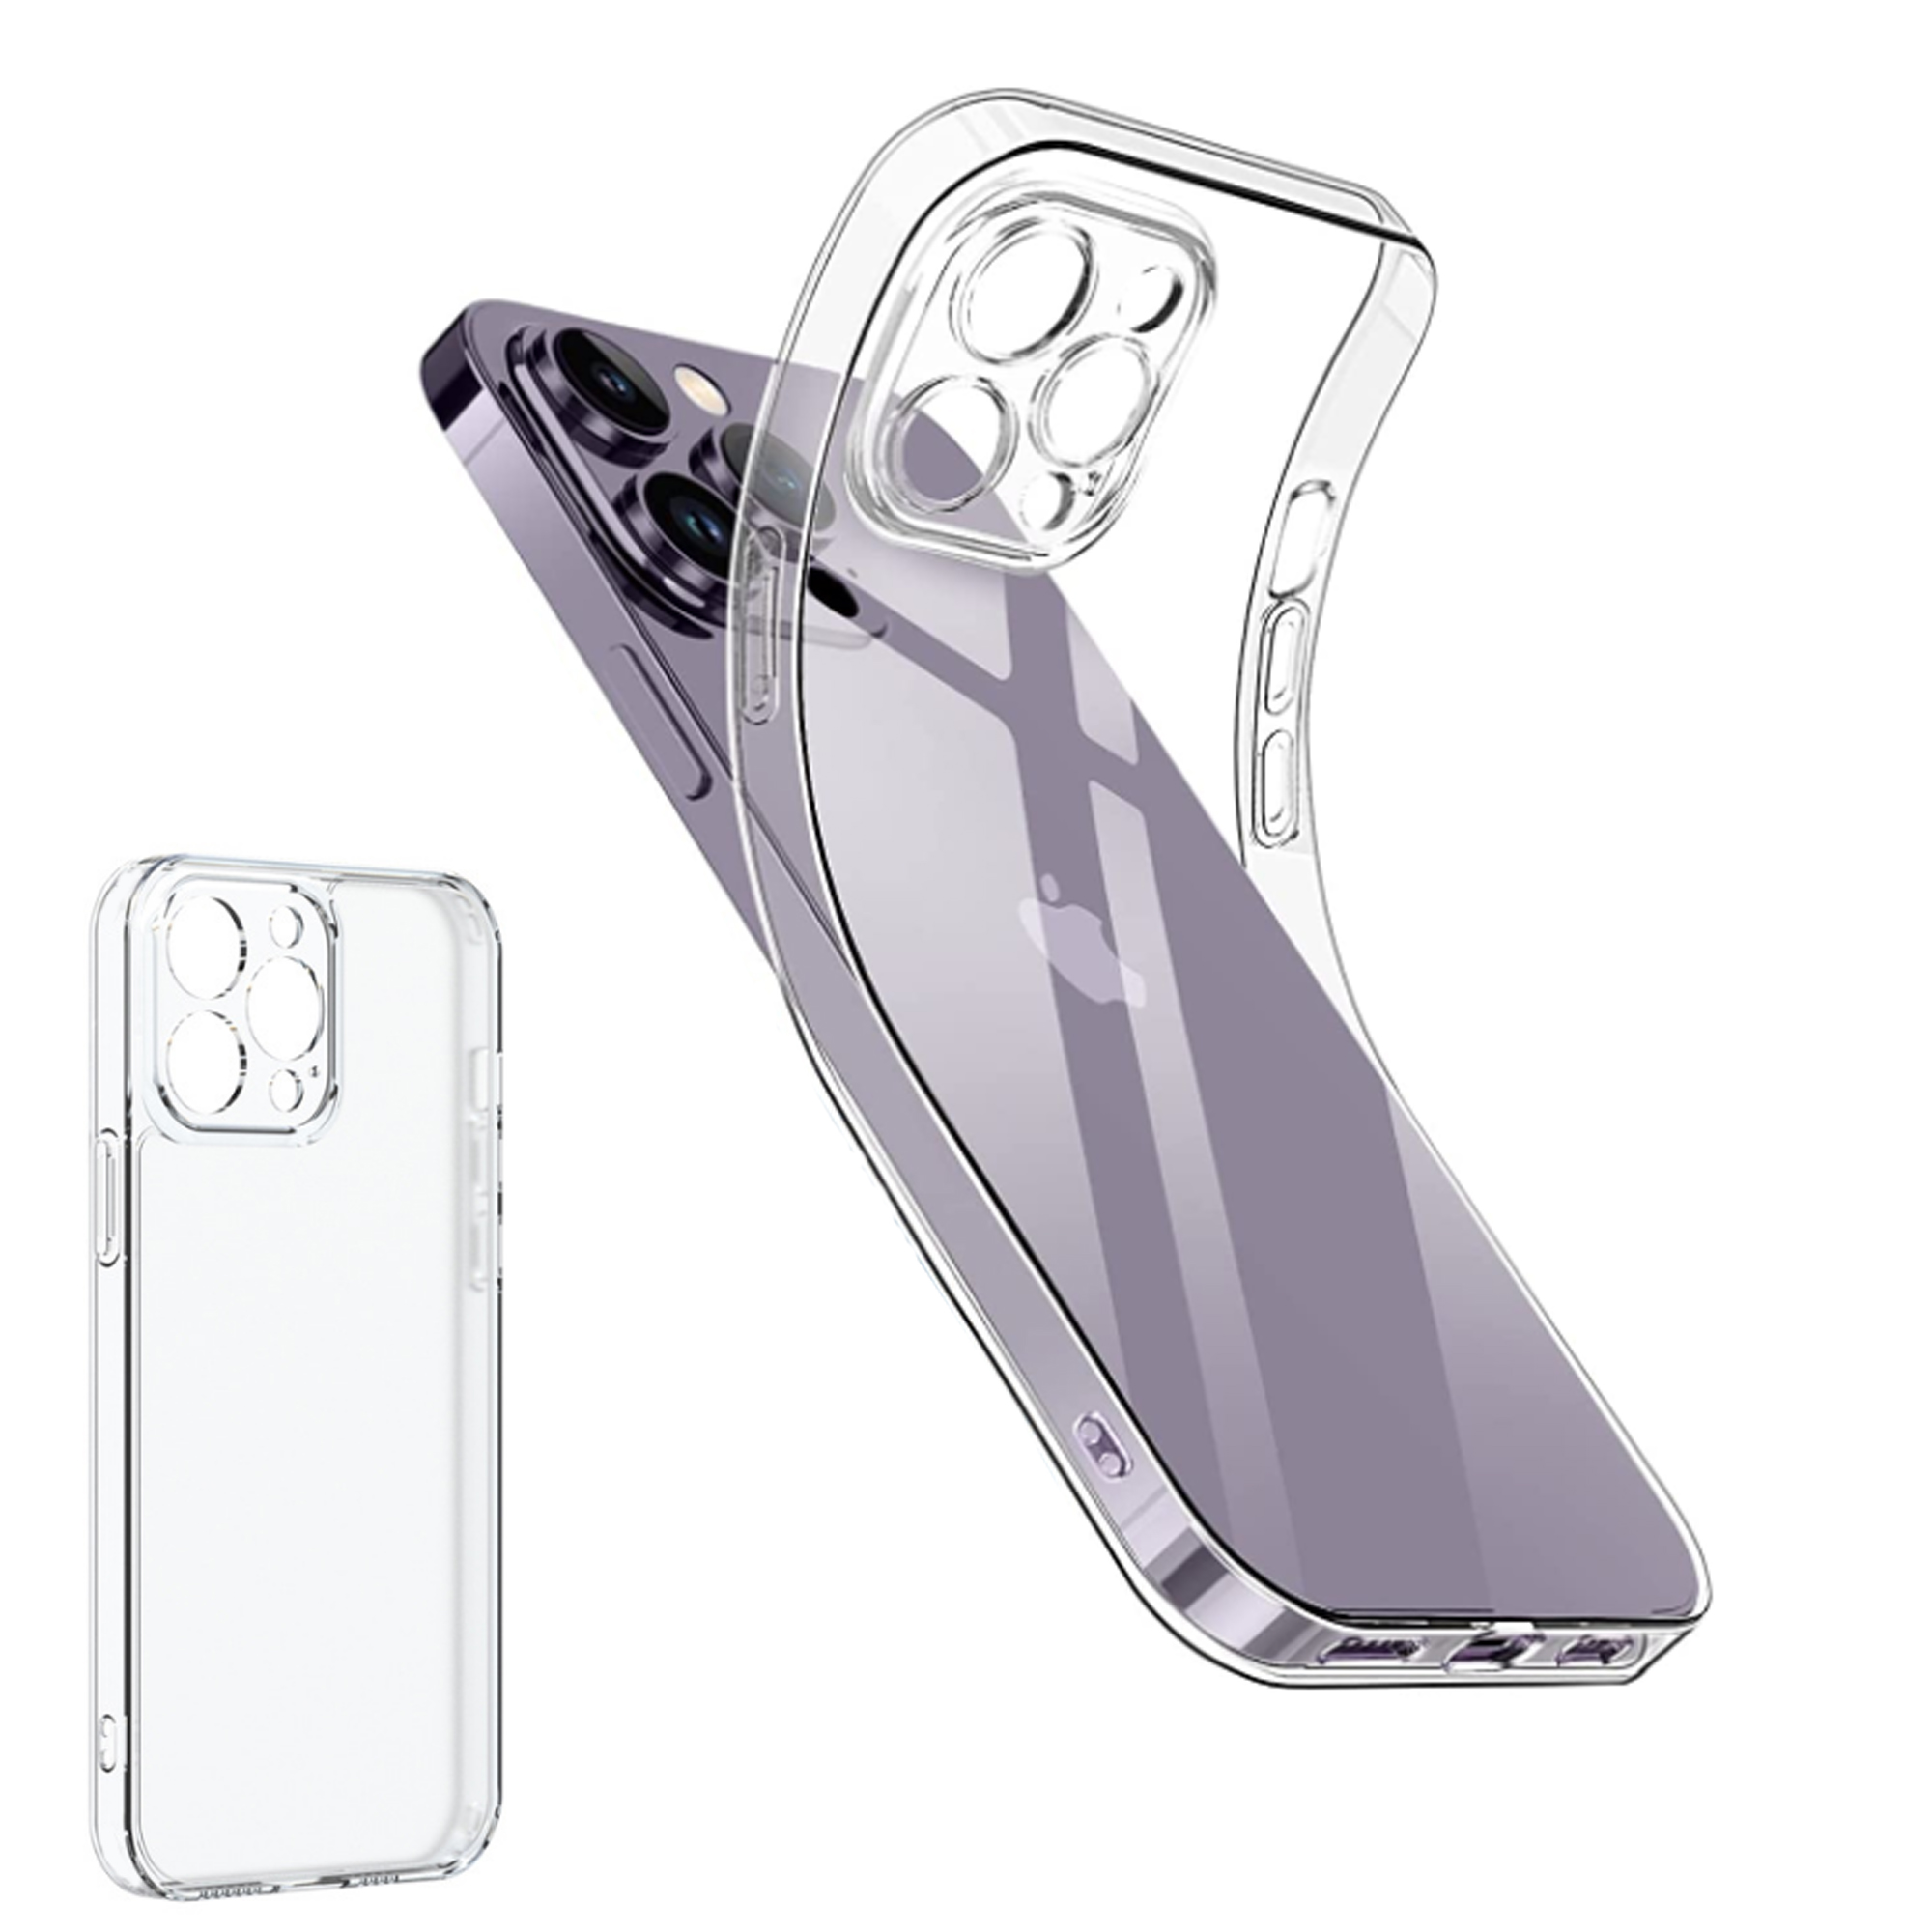  Speck Funda para iPhone 14 Pro Max – Protección contra caídas  con funda delgada de doble capa resistente a los arañazos para iPhone 14  Pro Max de 6.7 pulgadas – Funda